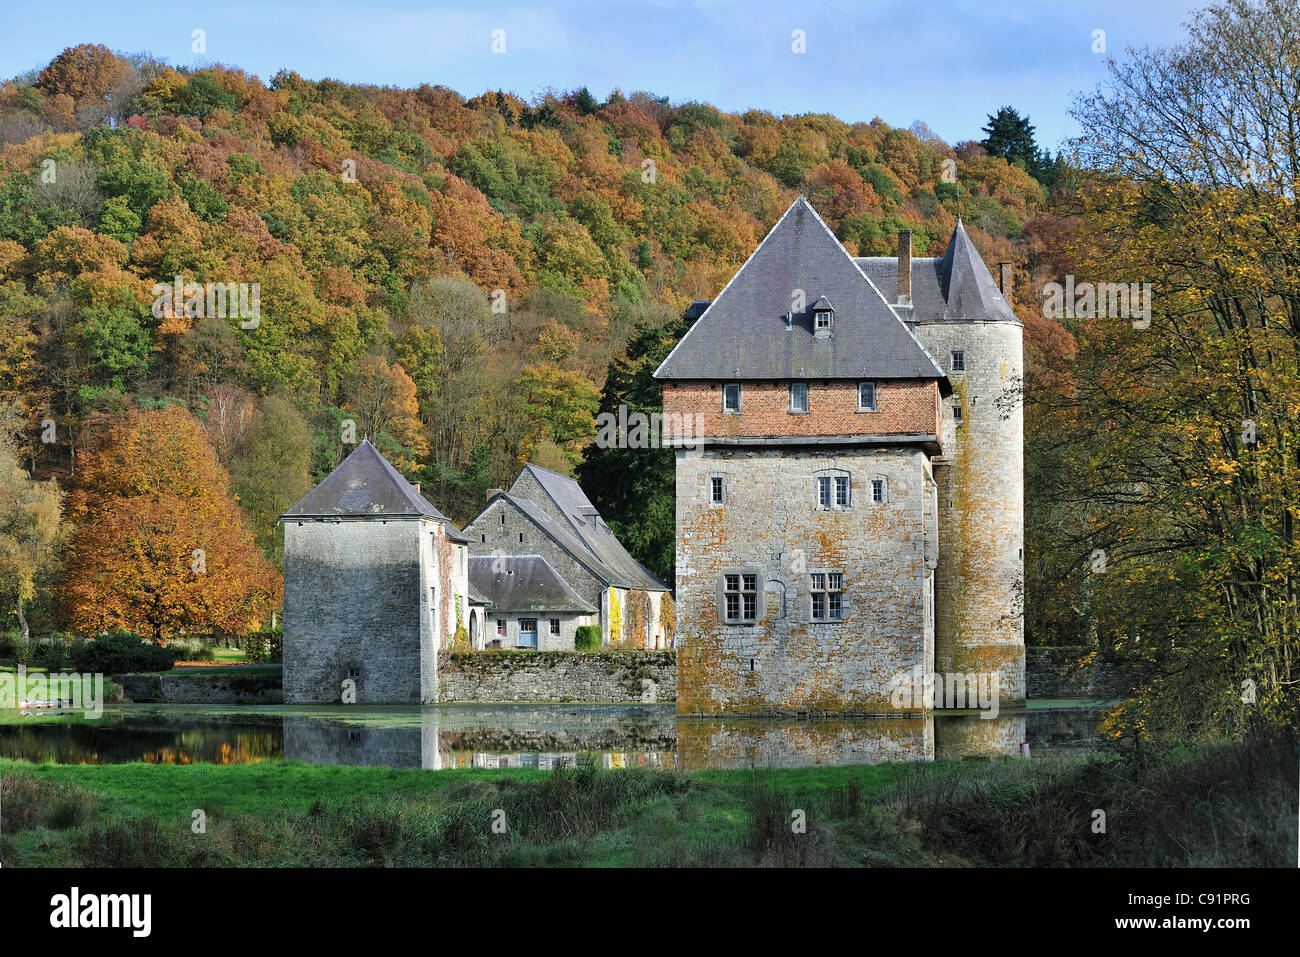 13e siècle château de Carondelet à Crupet dans les Ardennes Belges, Namur, Wallonie, Belgique Banque D'Images